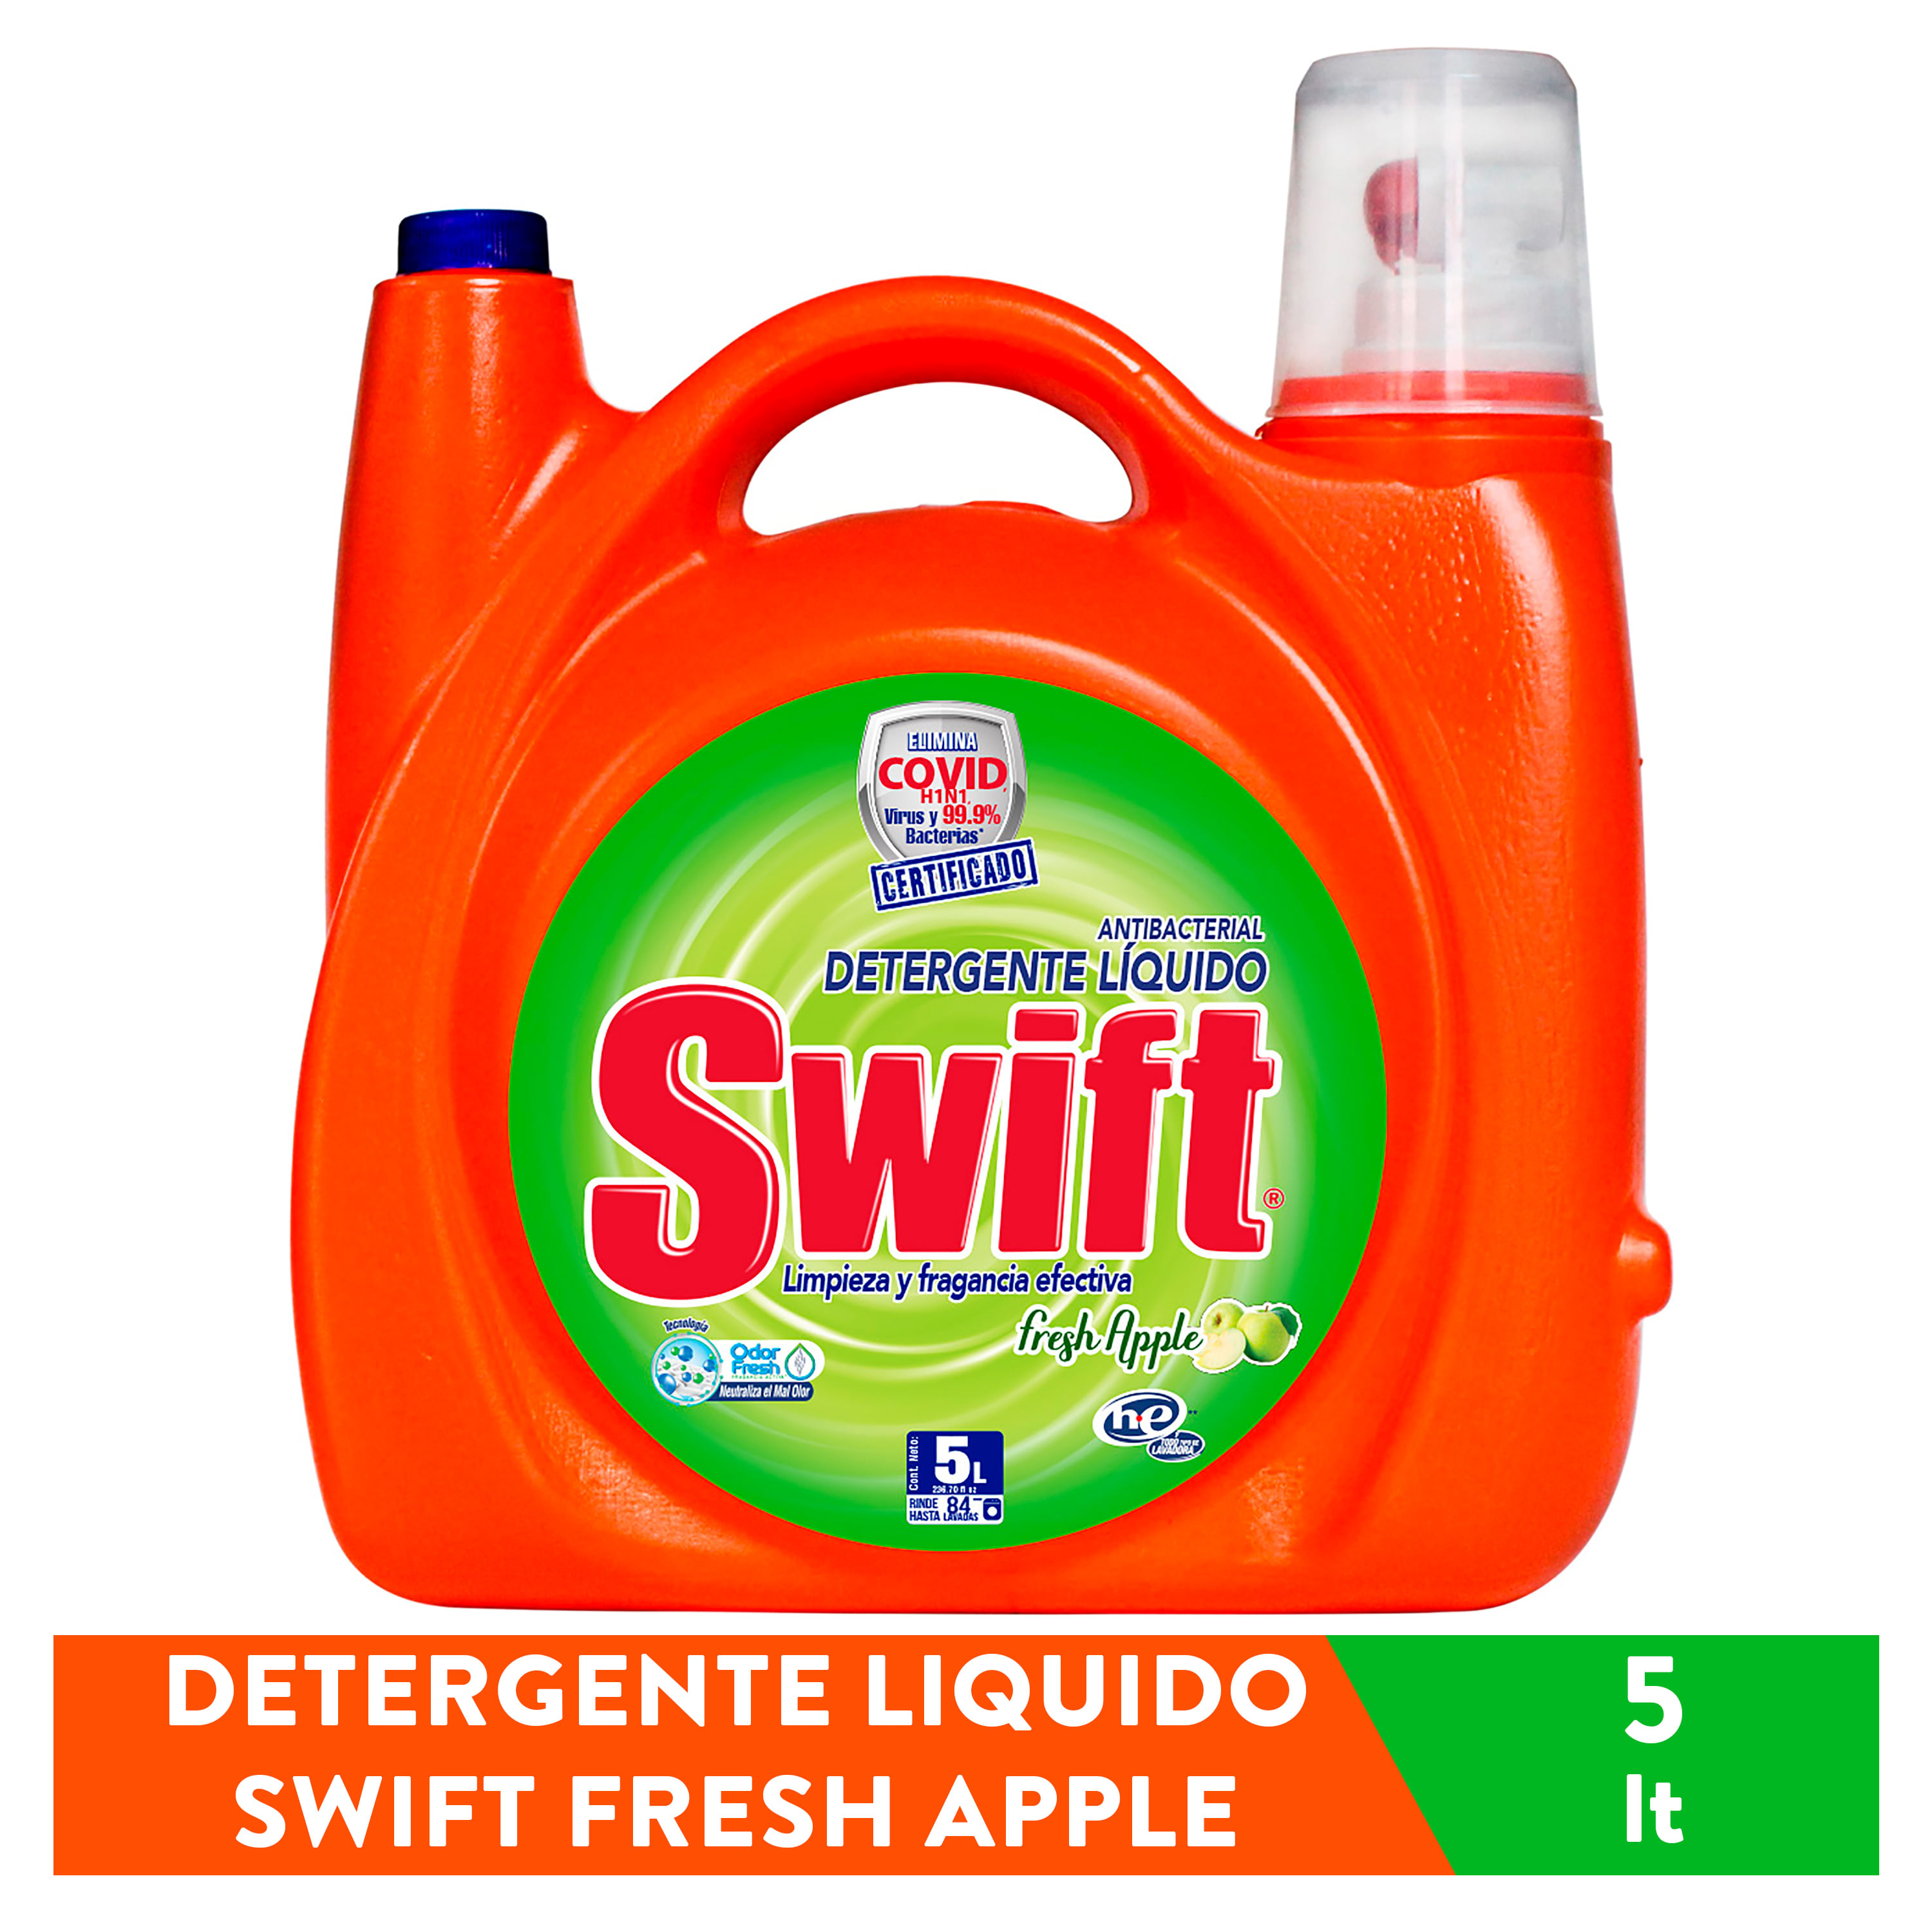 Detergente-Liquido-Swift-Fresh-Apple-5lt-1-6468